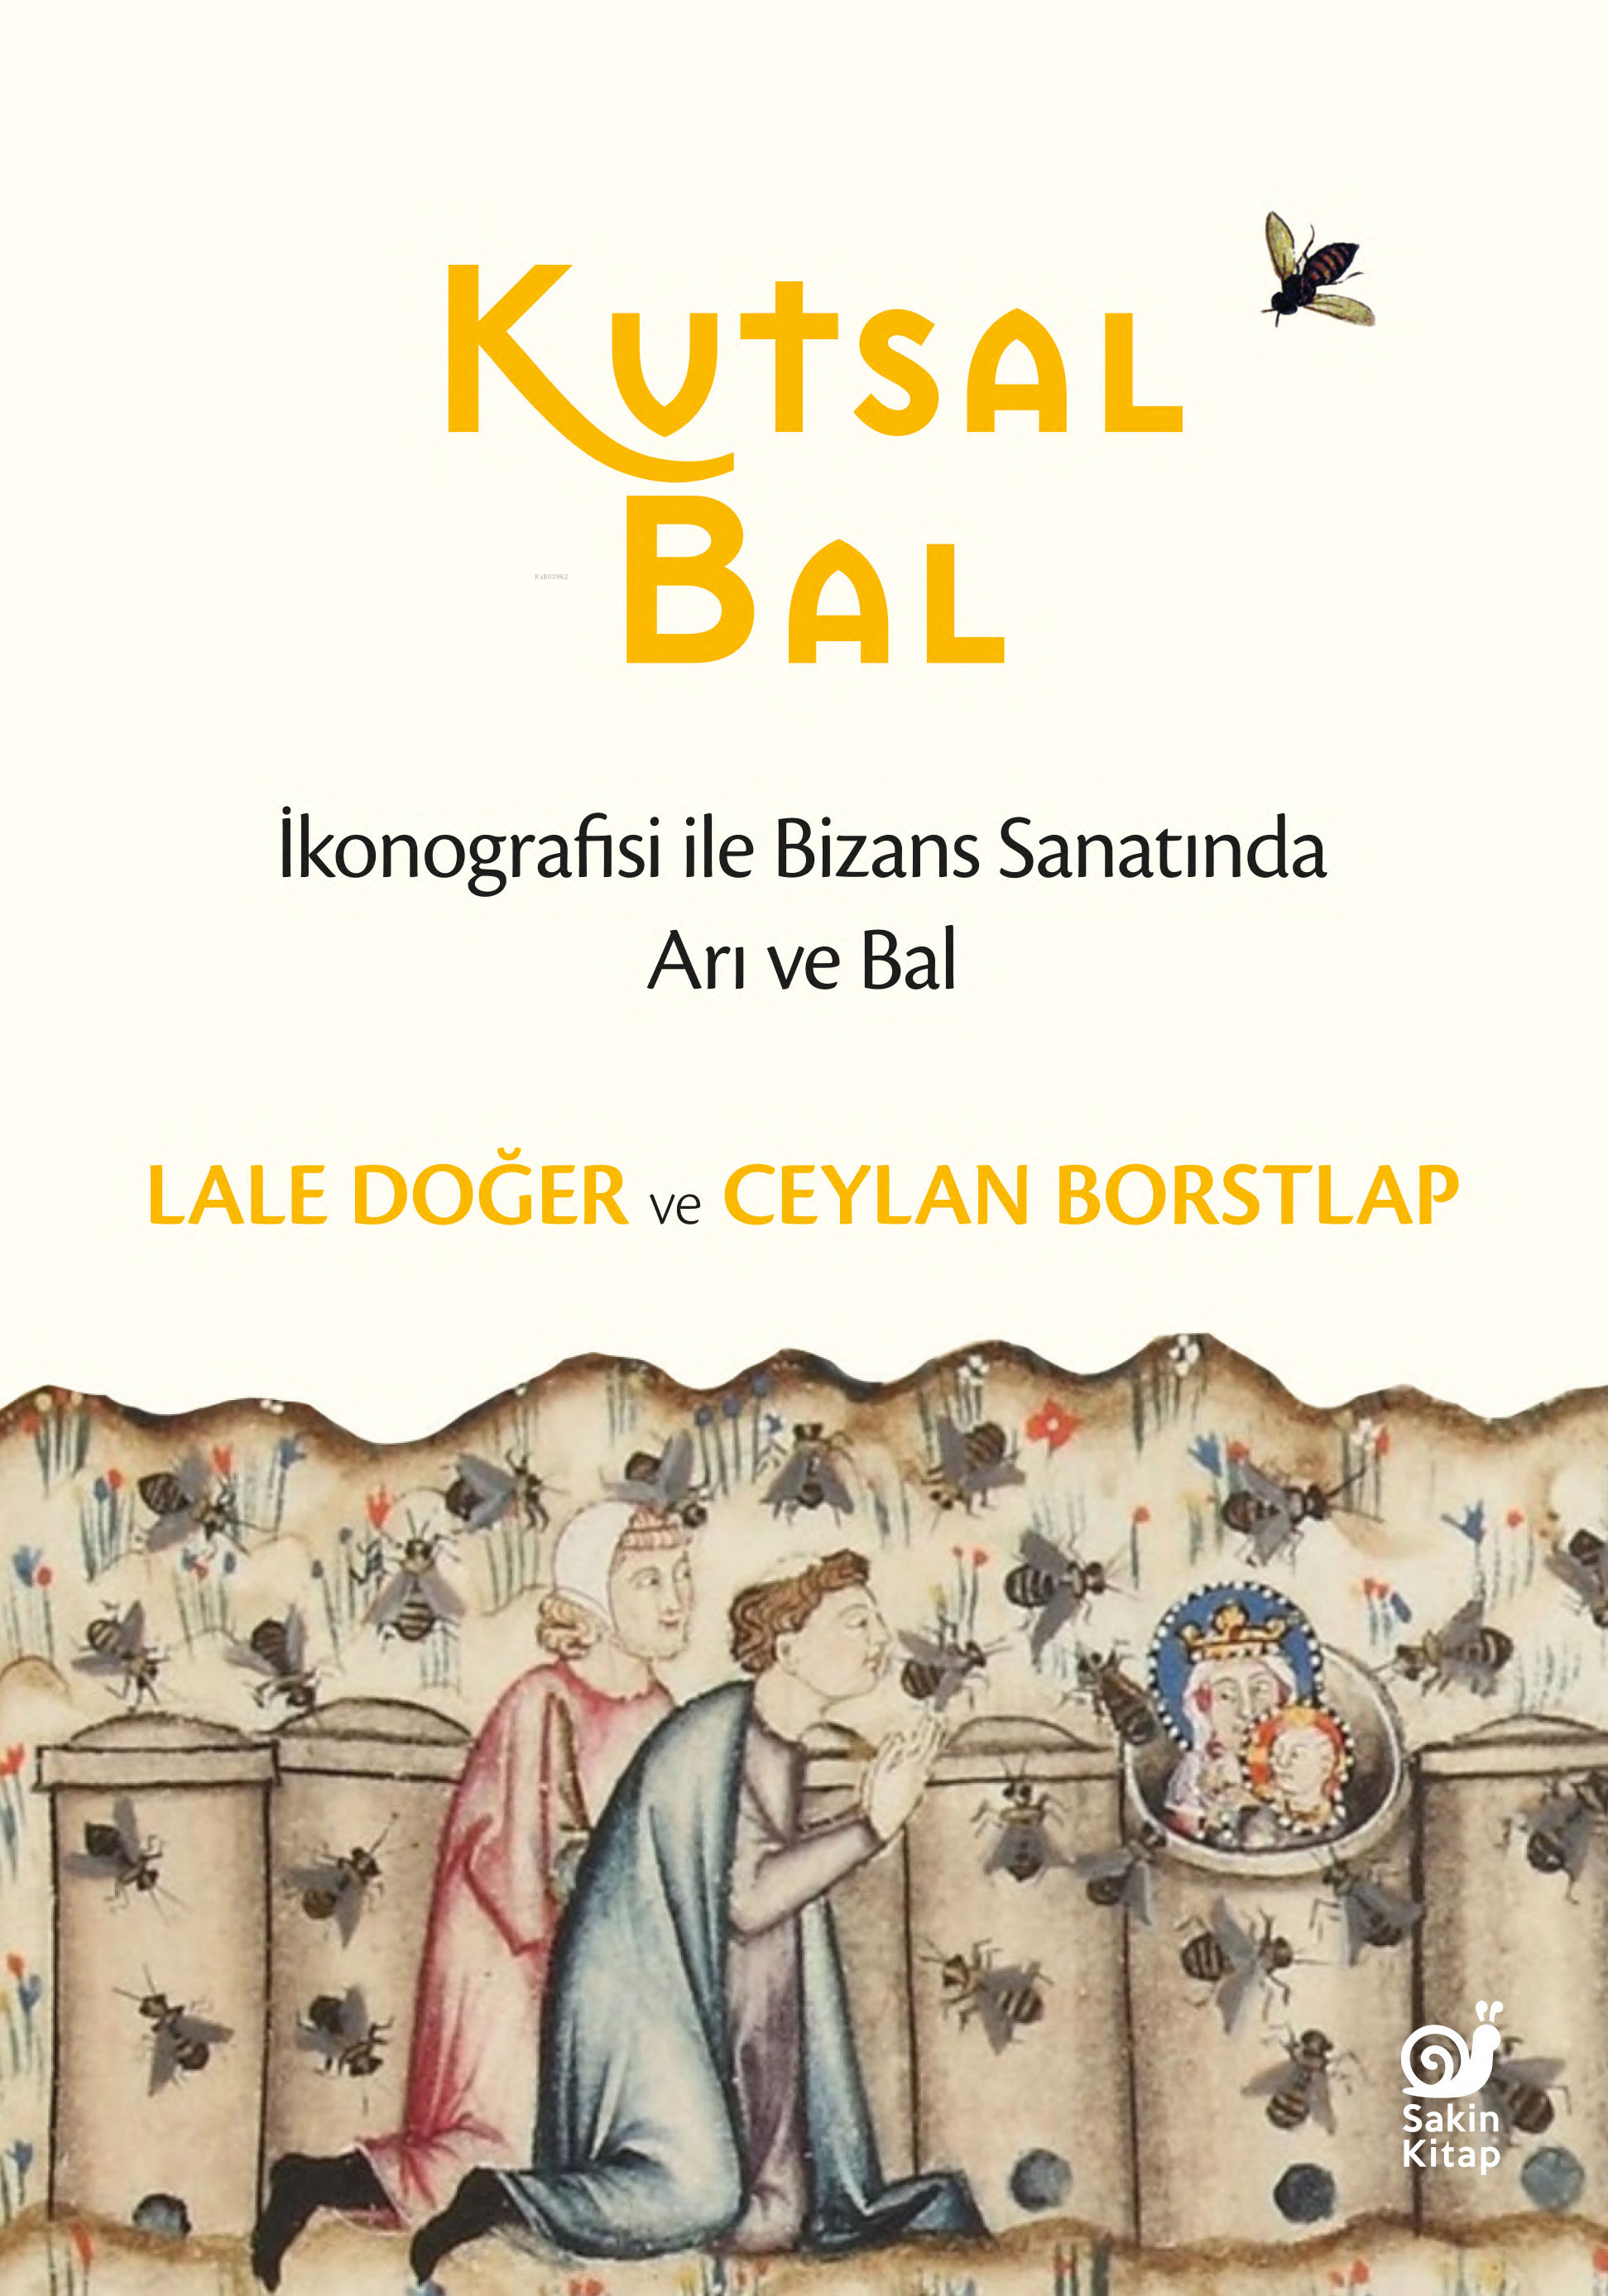 Kutsal Bal ;İkonografisi ile Bizans Sanatında Arı ve Bal